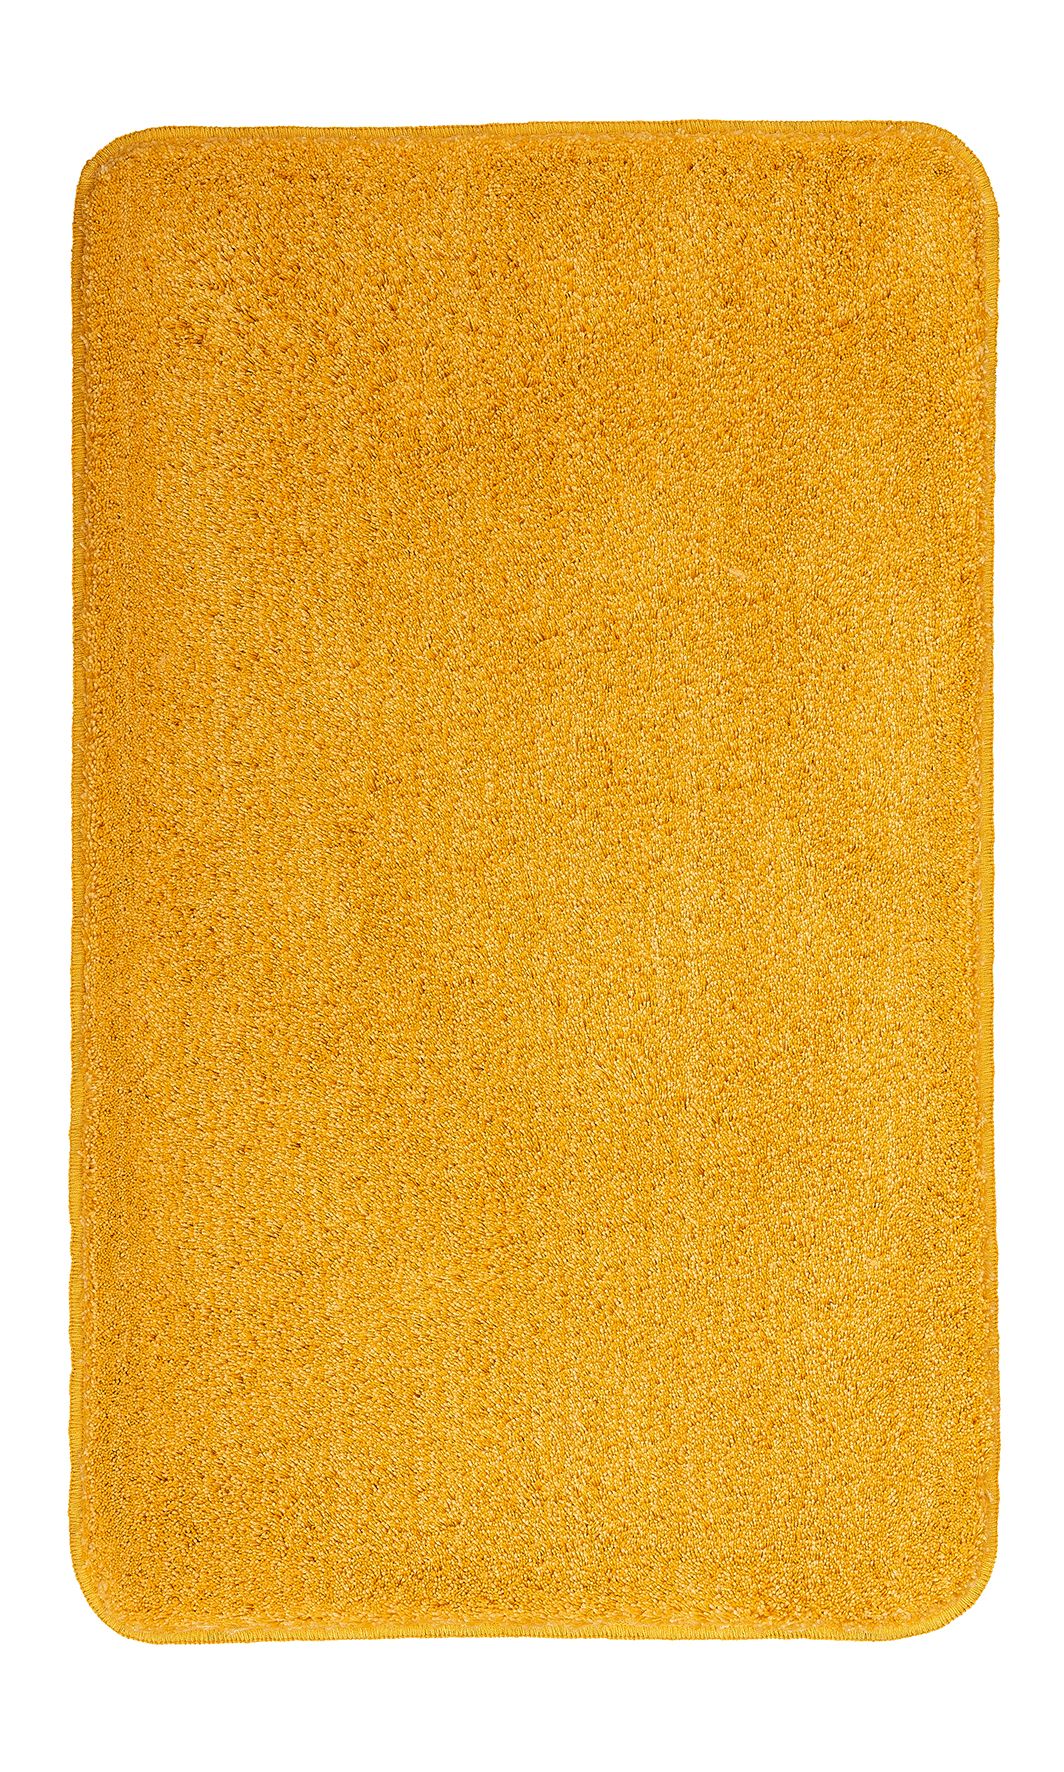 Badteppich, Relax Goldgelb, 60x100  cm